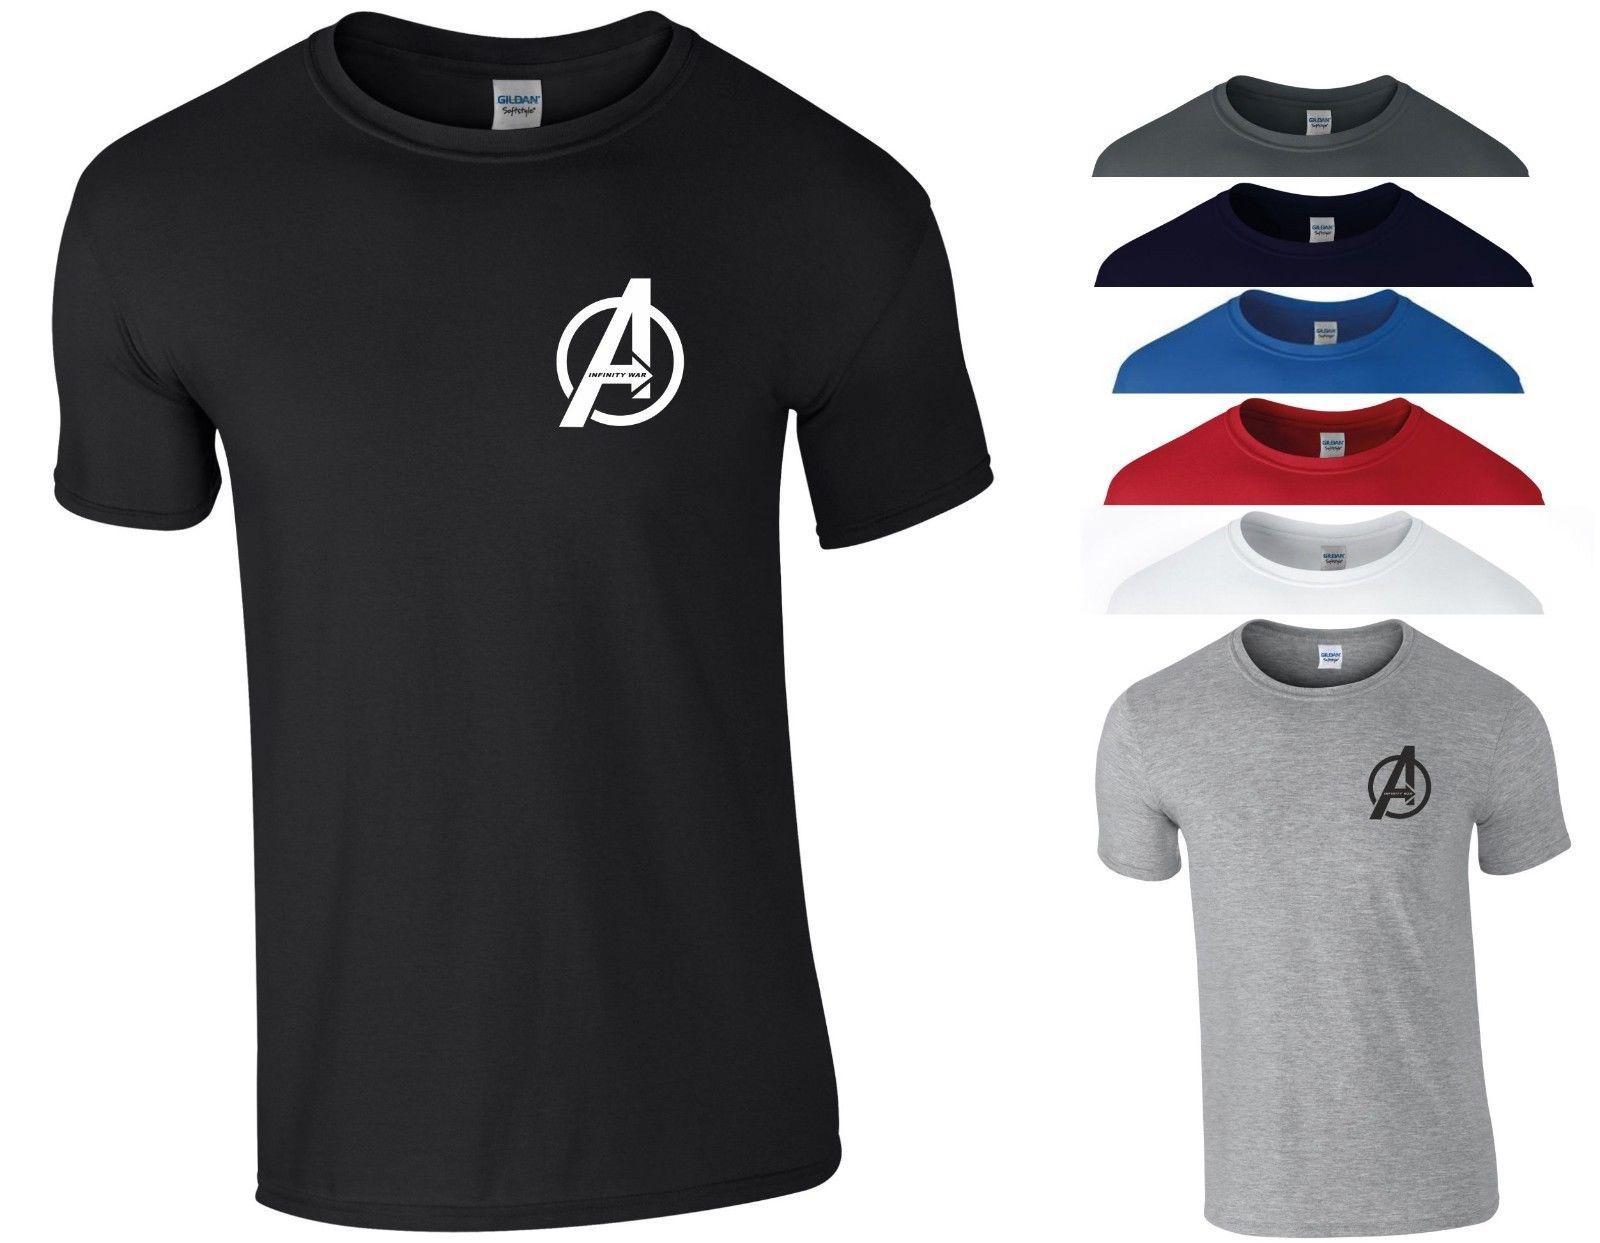 Zu Small Logo - Details Zu Avengers Infinity War T Shirt Small A Logo Marvel Iron ...